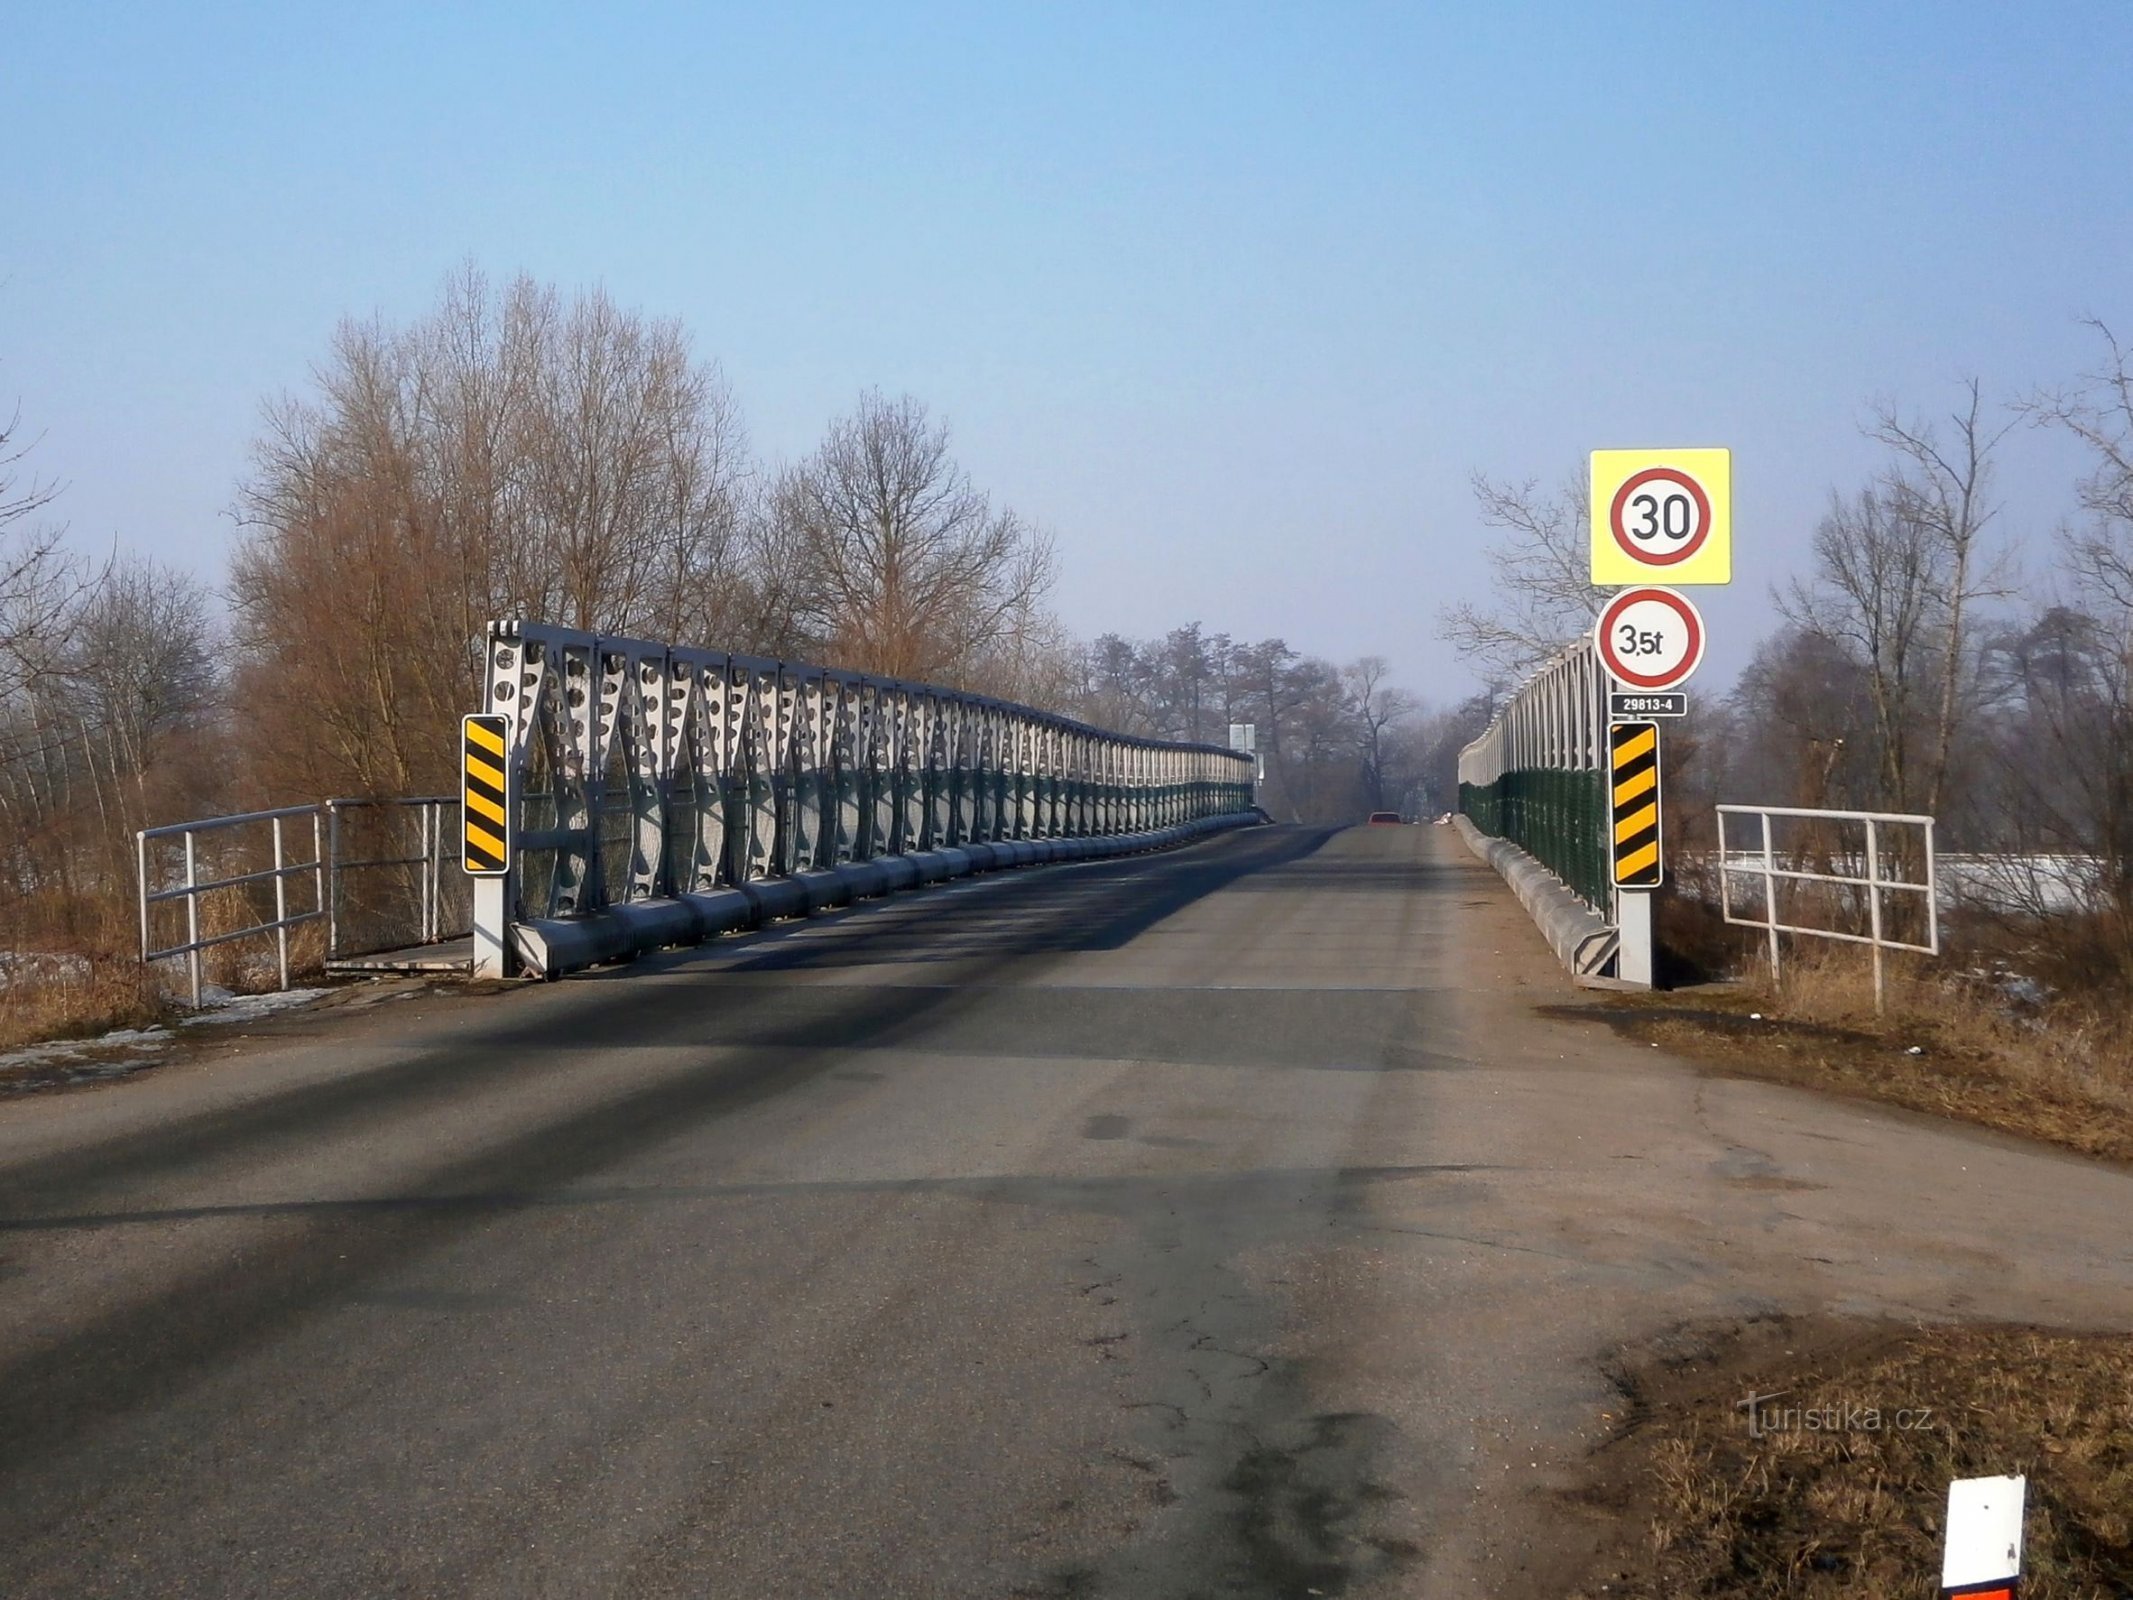 Železný most přes Labe (Vysoká nad Labem/Opatovice nad Labem, 13.2.2017)